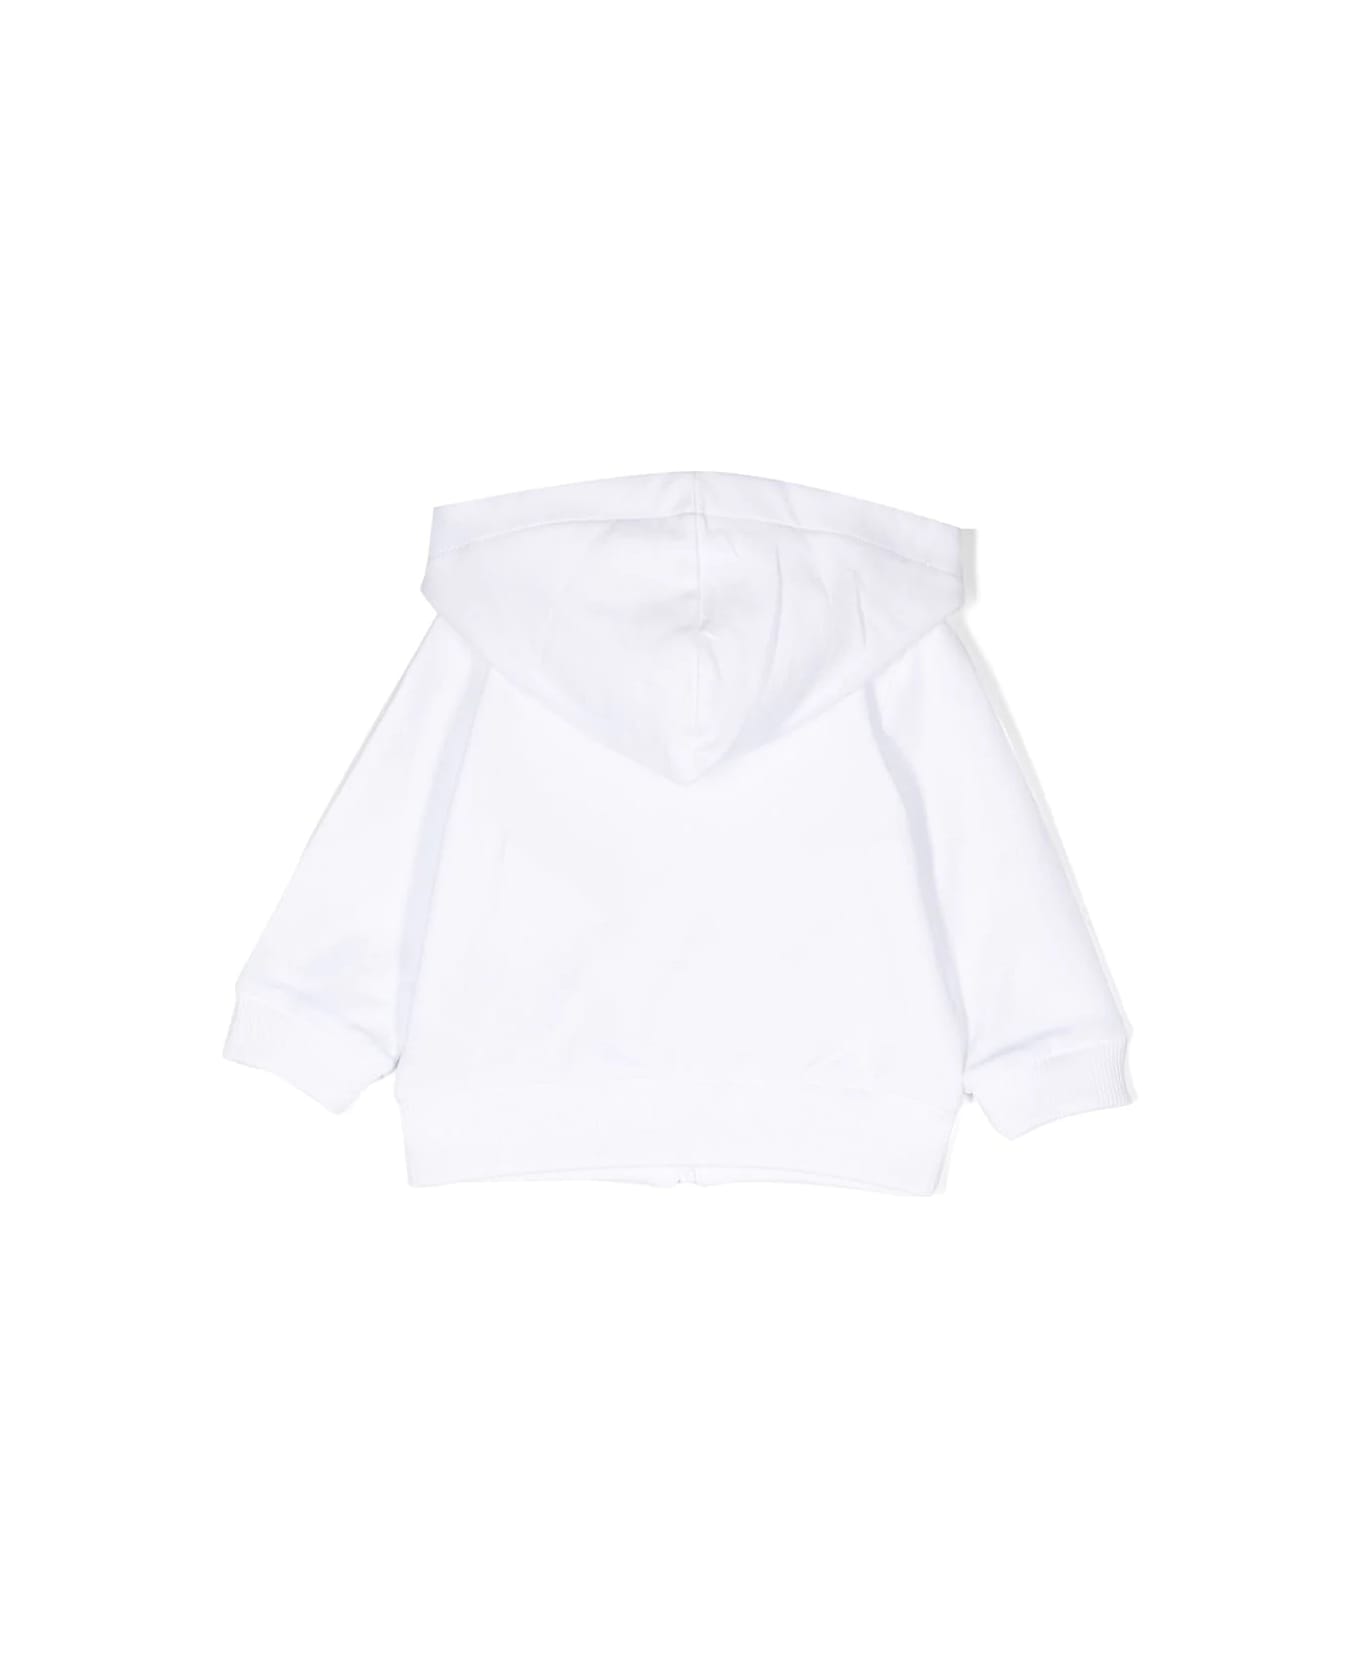 Moschino Sweatshirt With Print - White